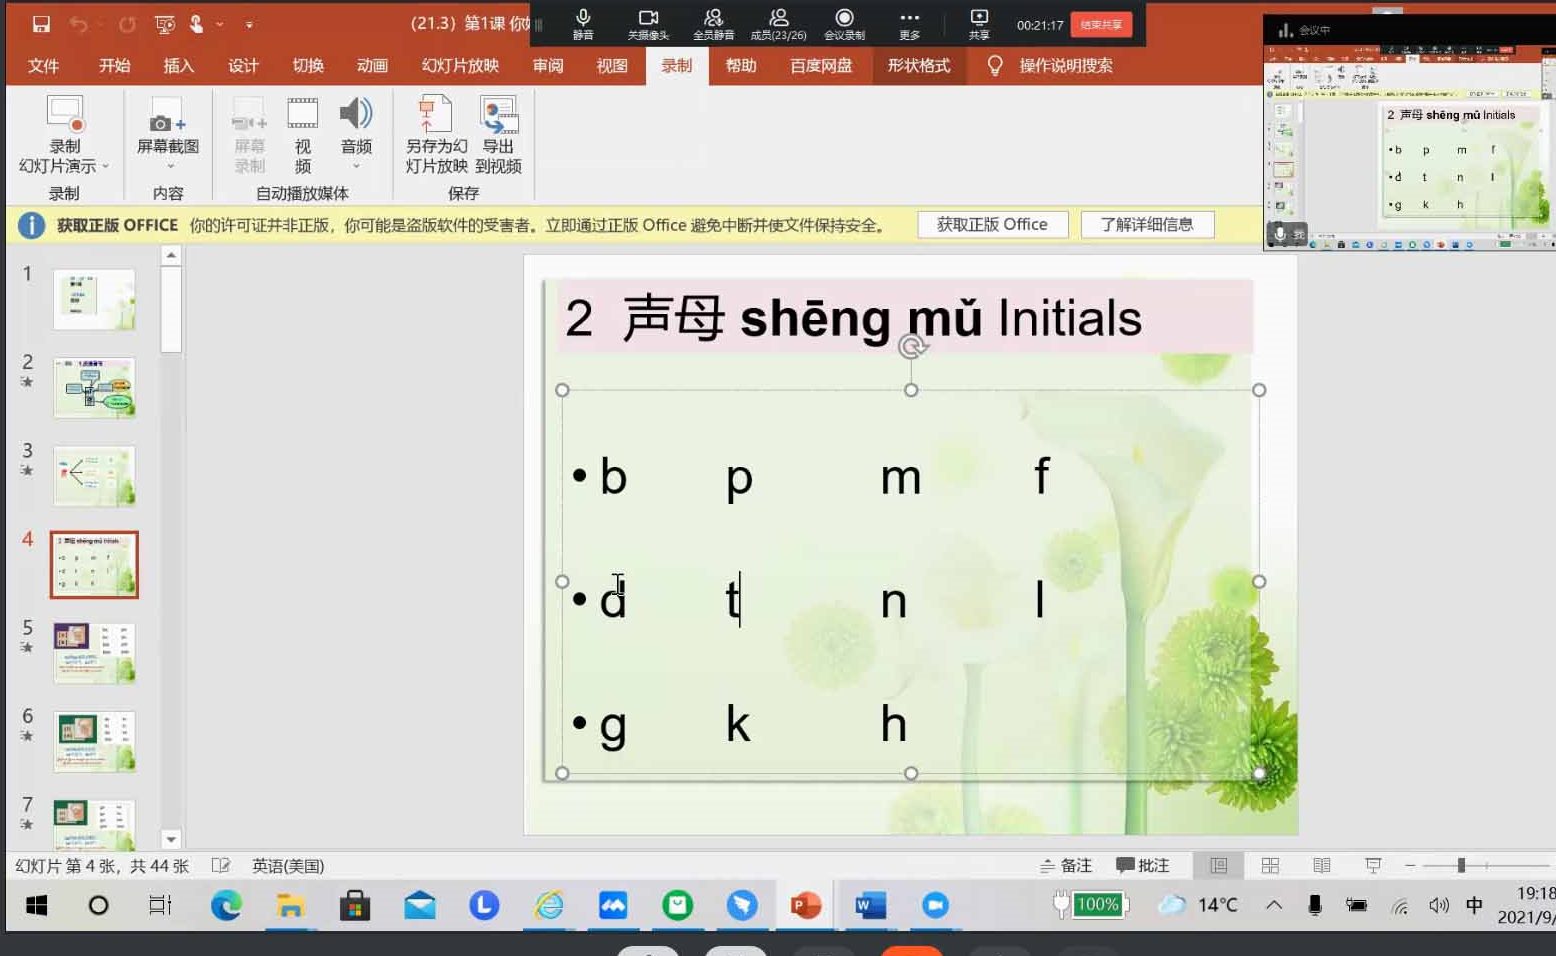 Вивчати китайську мову - цікаво і престижно